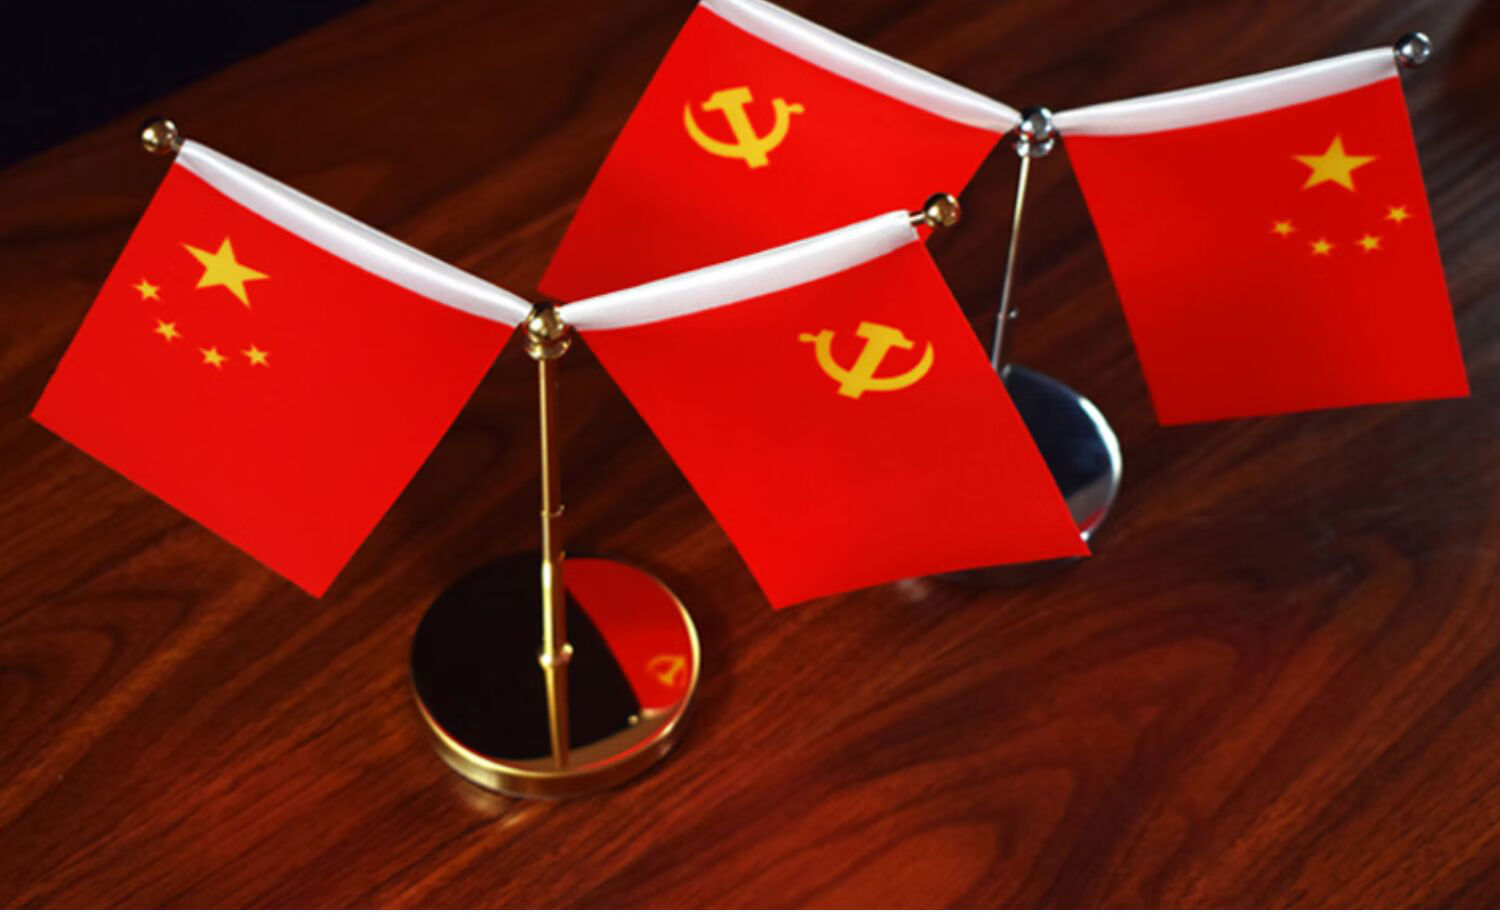 办公桌上的红旗老板办公桌上党建桌面装饰品五星红旗.